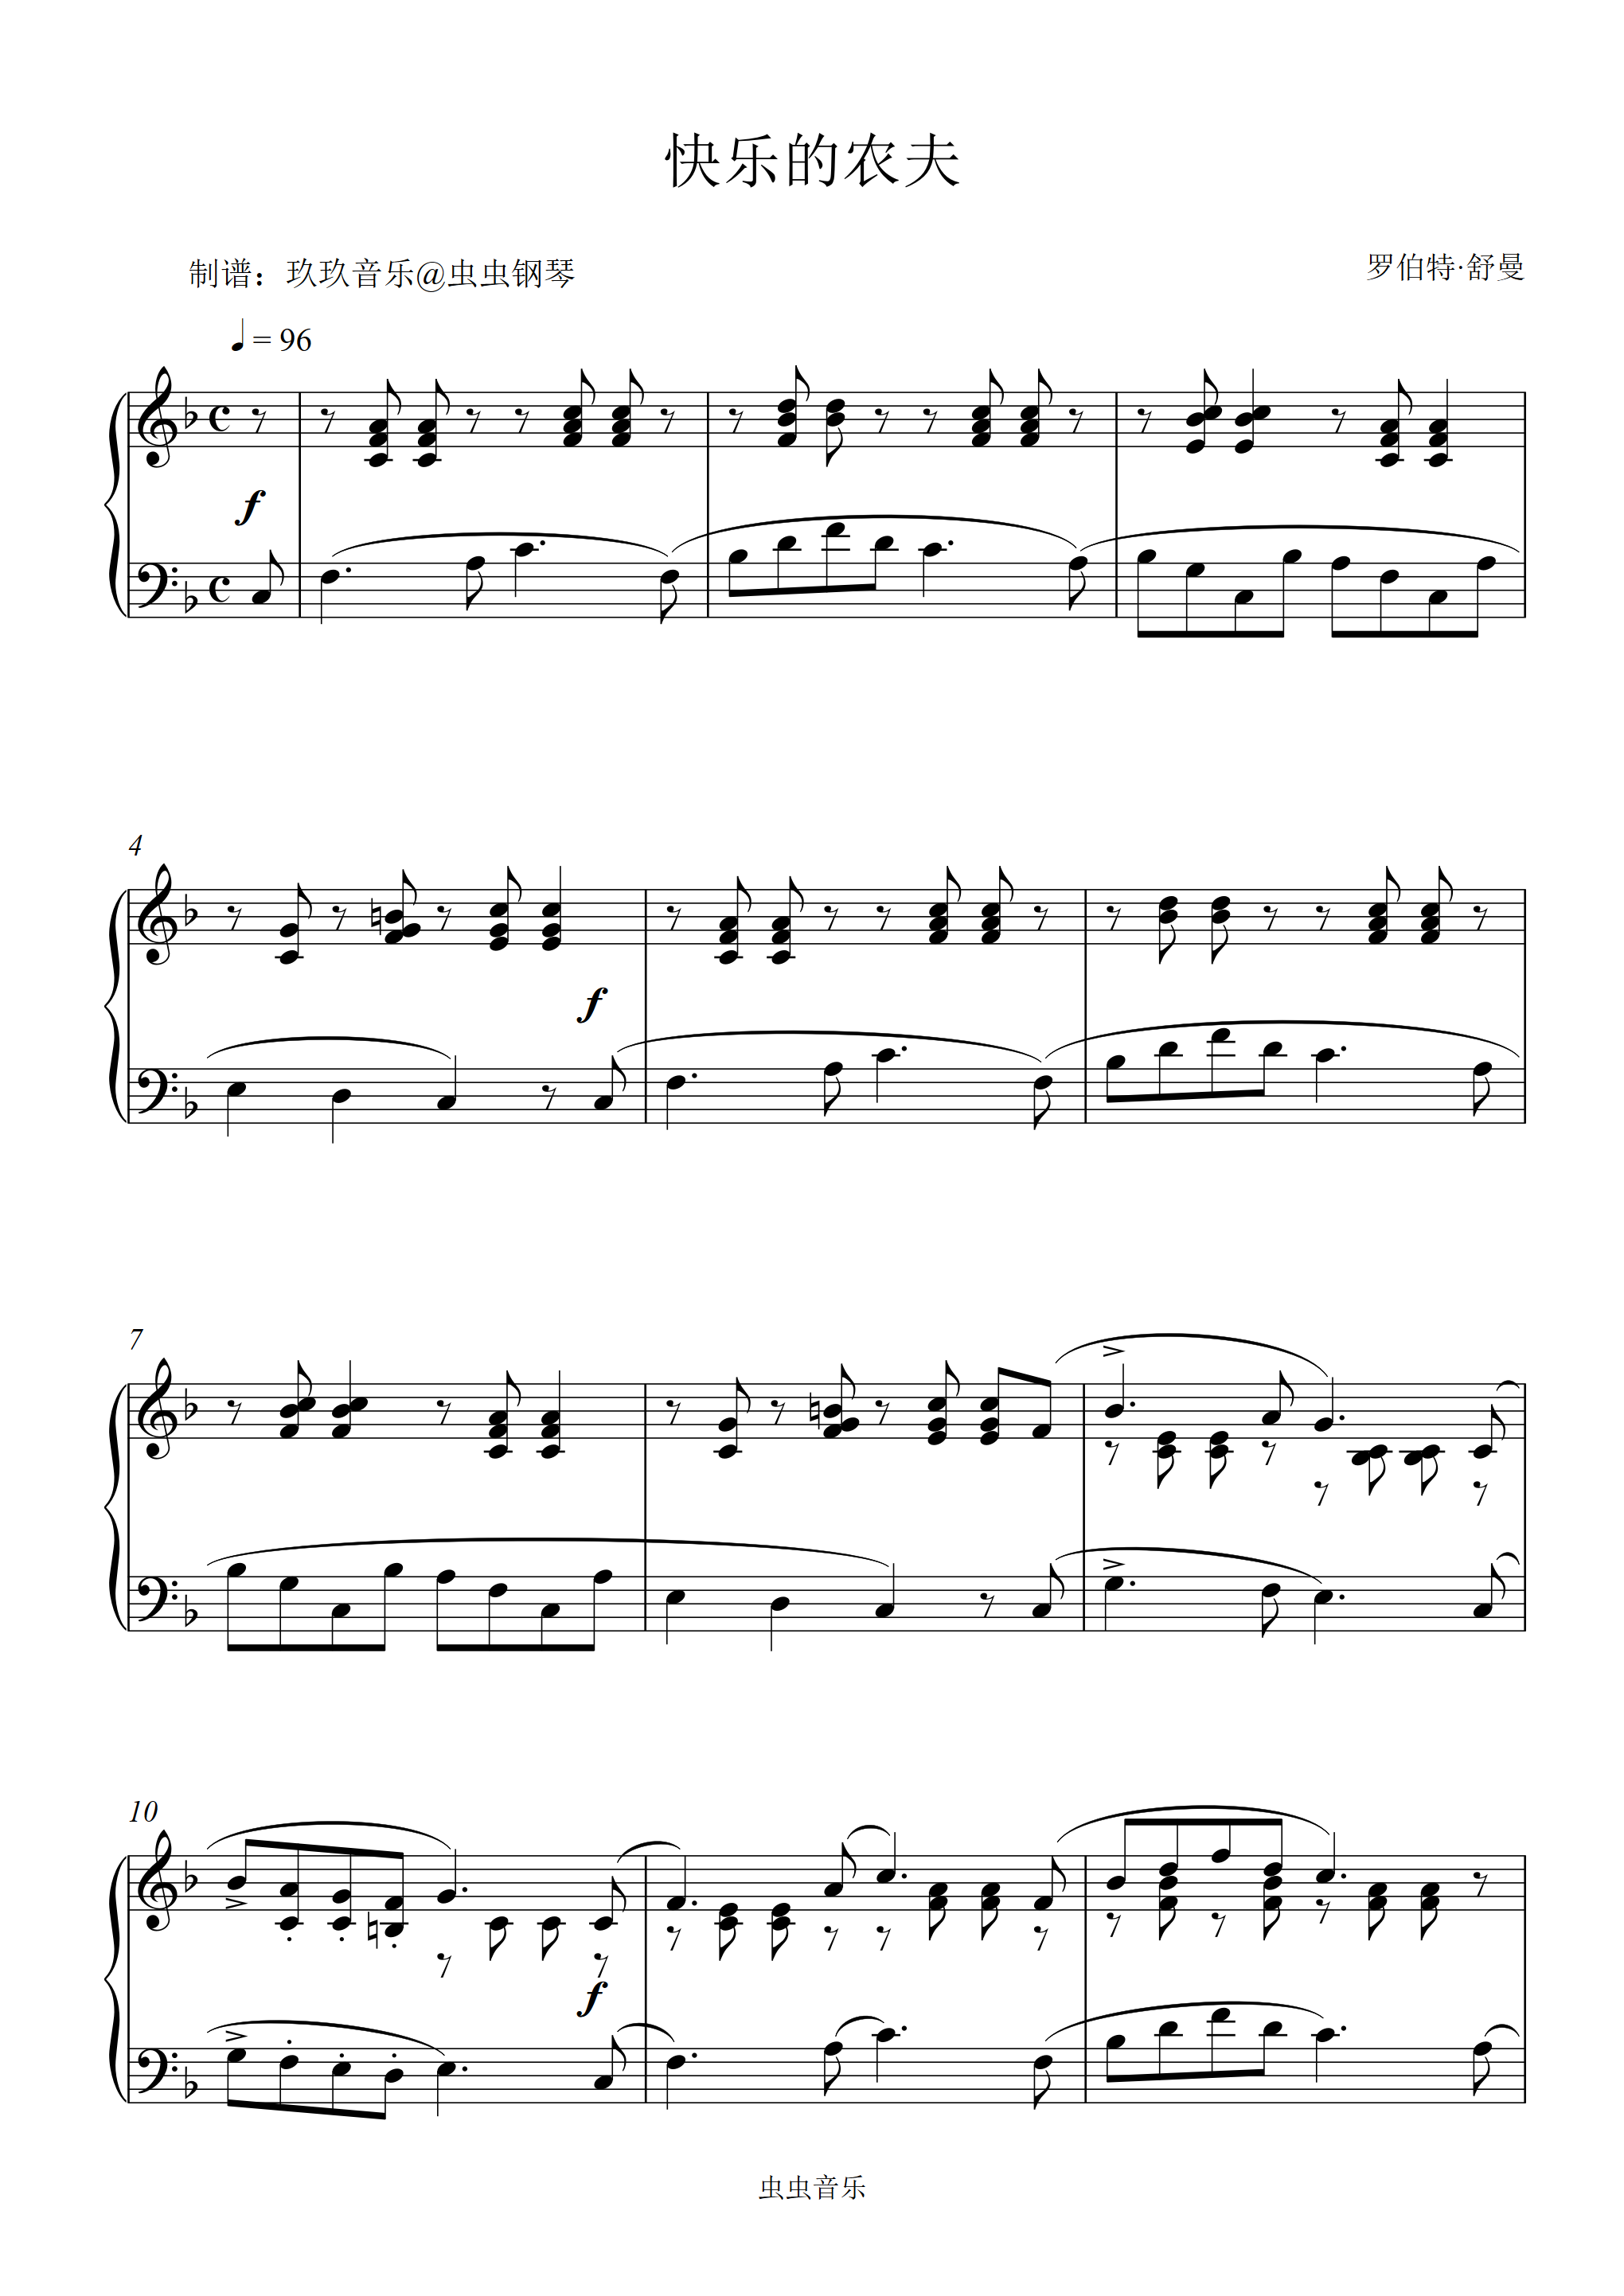 《快乐的农夫 Op.68，No.10 ,钢琴谱》舒曼|弹琴吧|钢琴谱|吉他谱|钢琴曲|乐谱|五线谱|高清免费下载|蛐蛐钢琴网